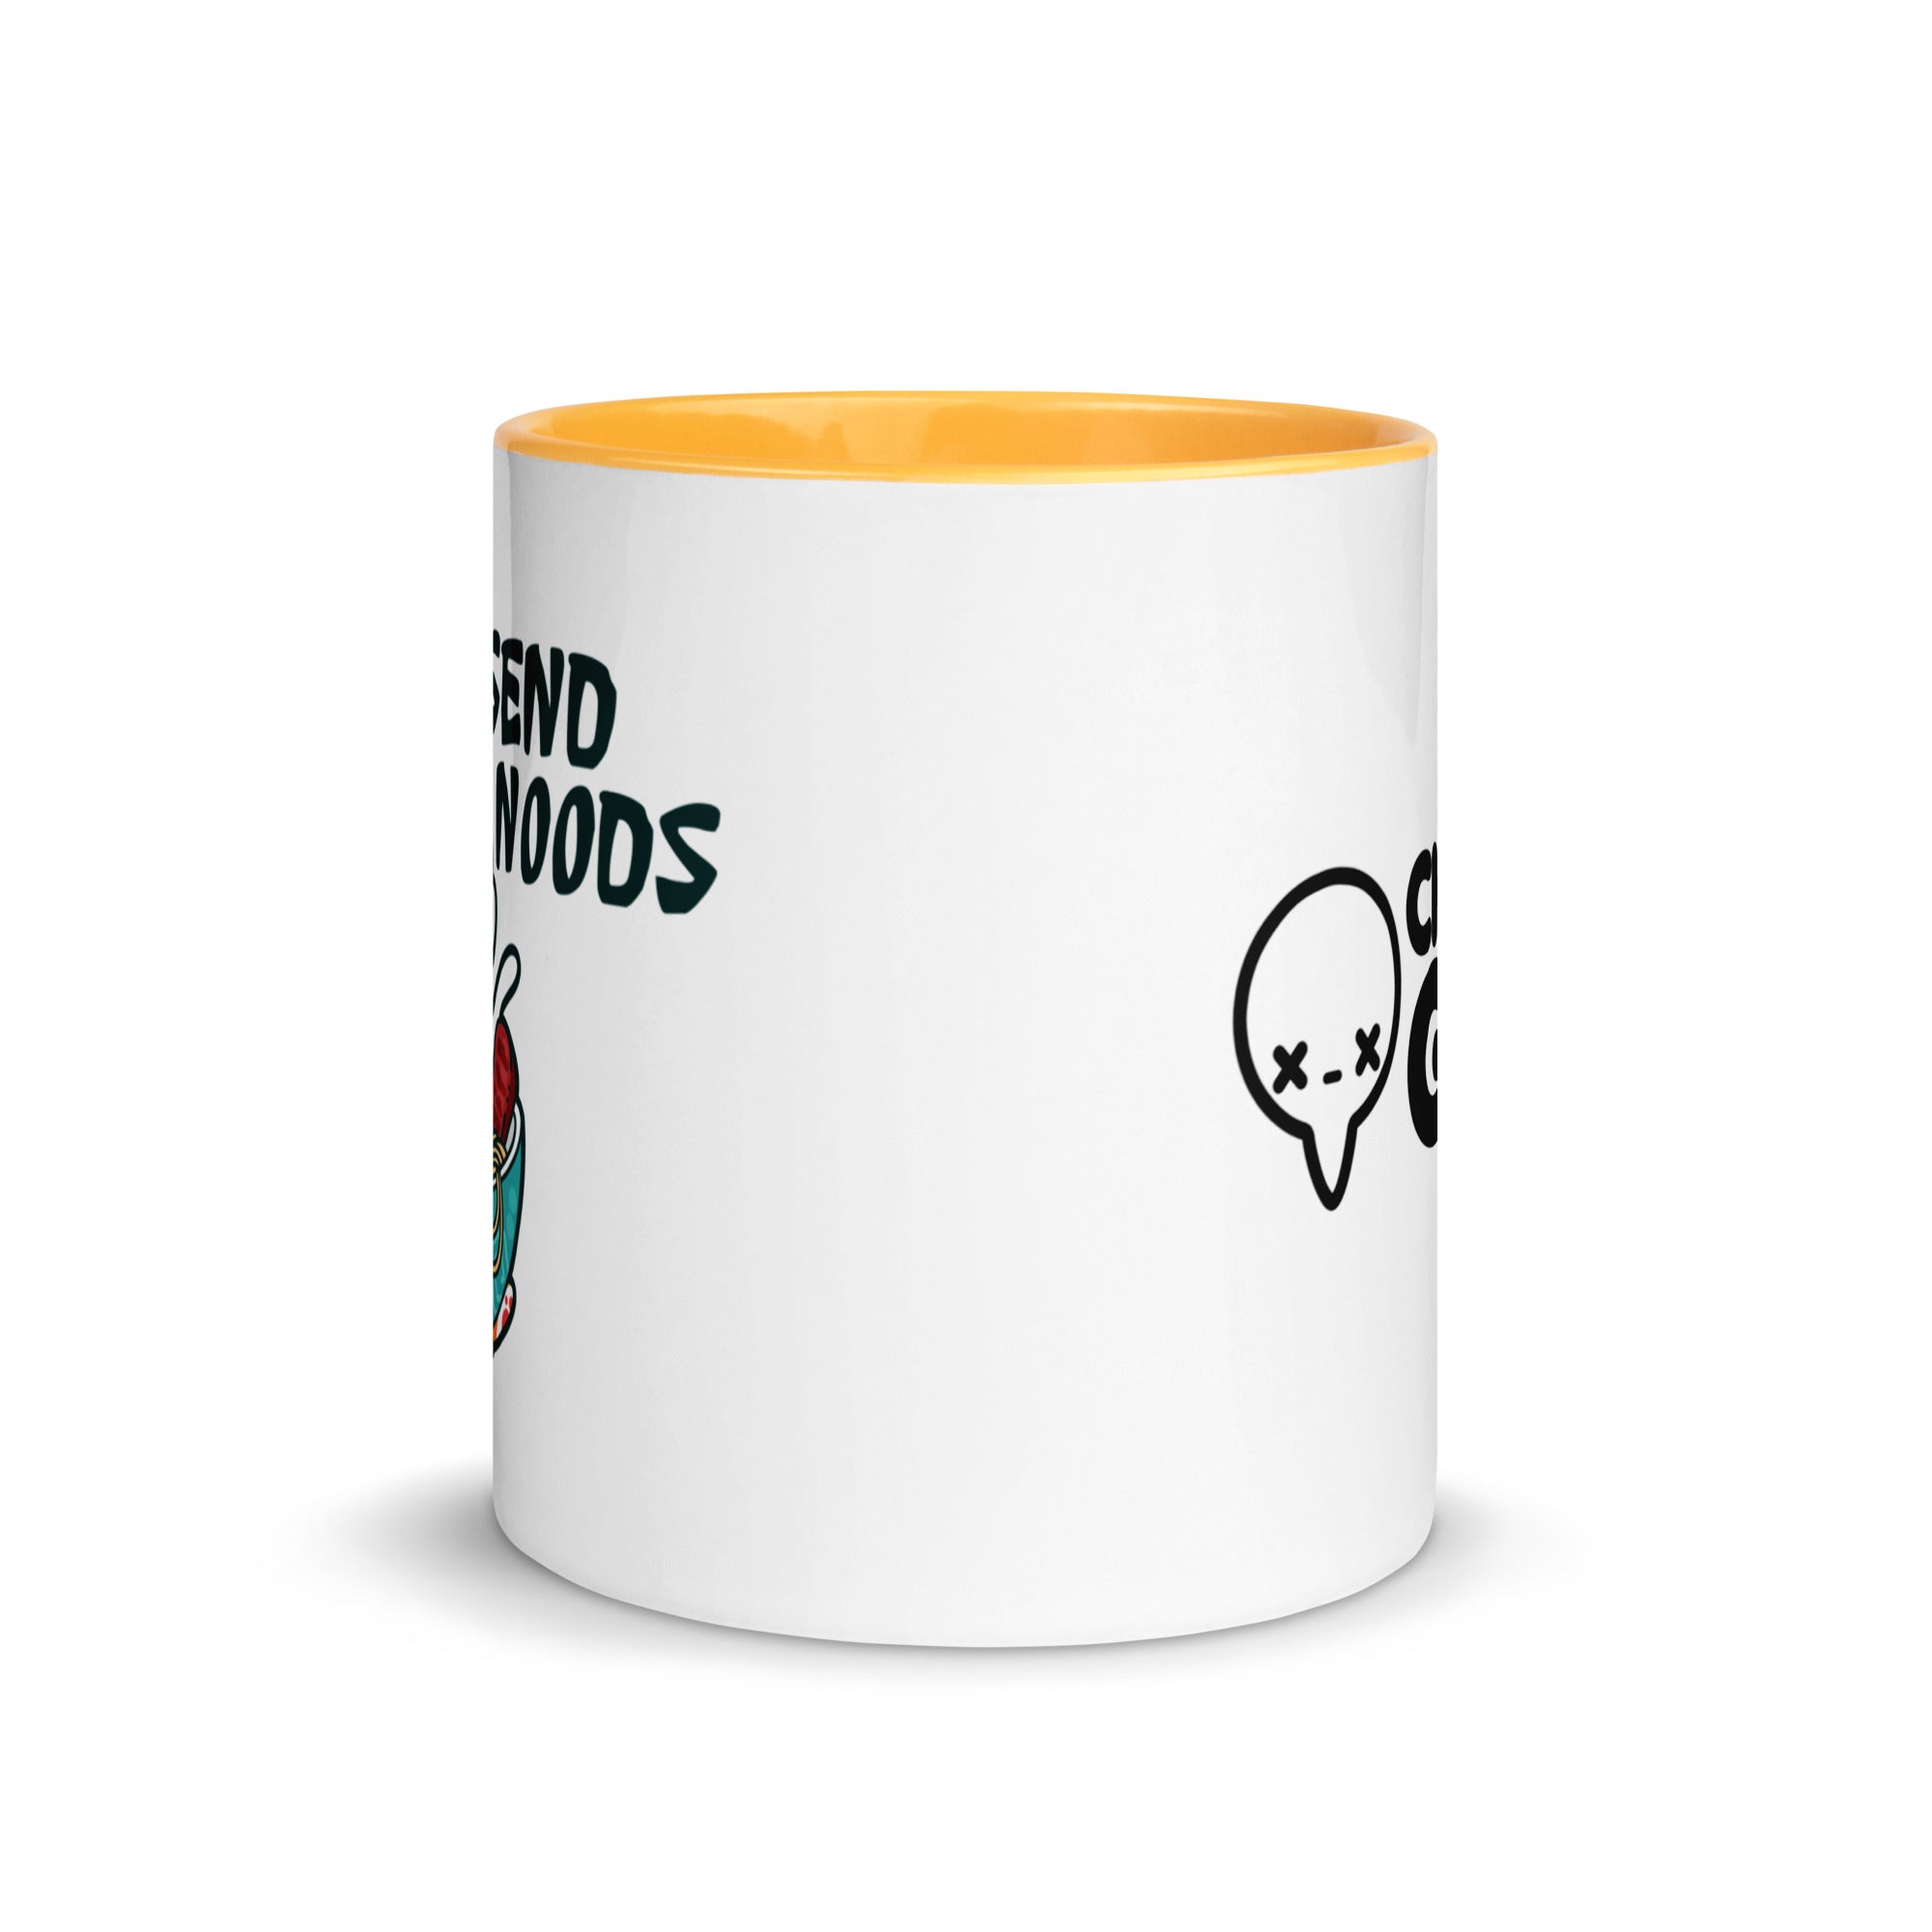 SEND NOODS - Mug with Color Inside